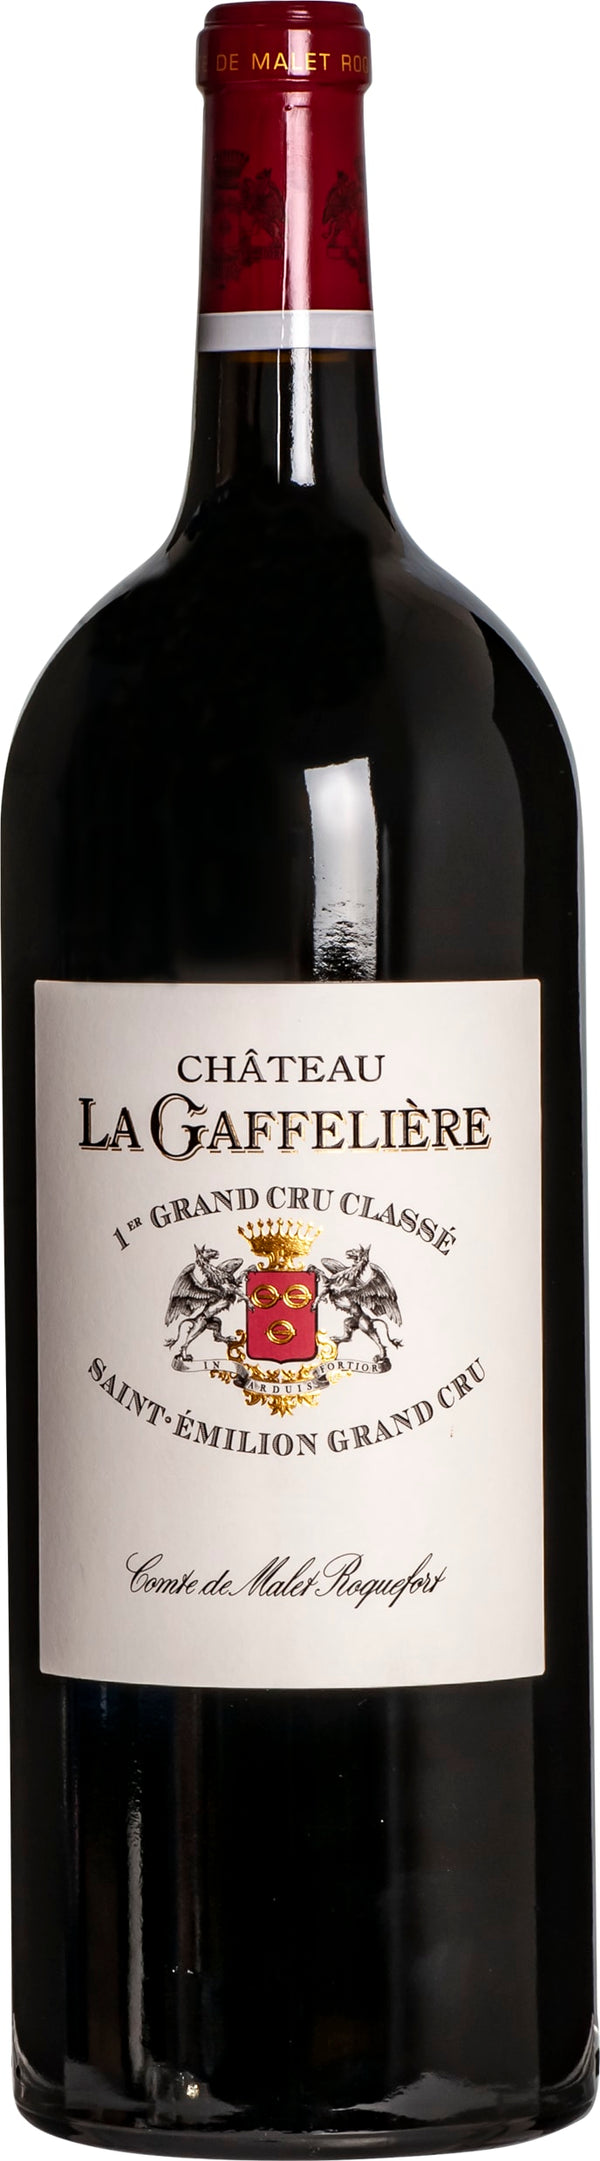 Chateau La Gaffeliere Saint Emilion Premier Grand Cru Classe 2011 6x75cl - Just Wines 